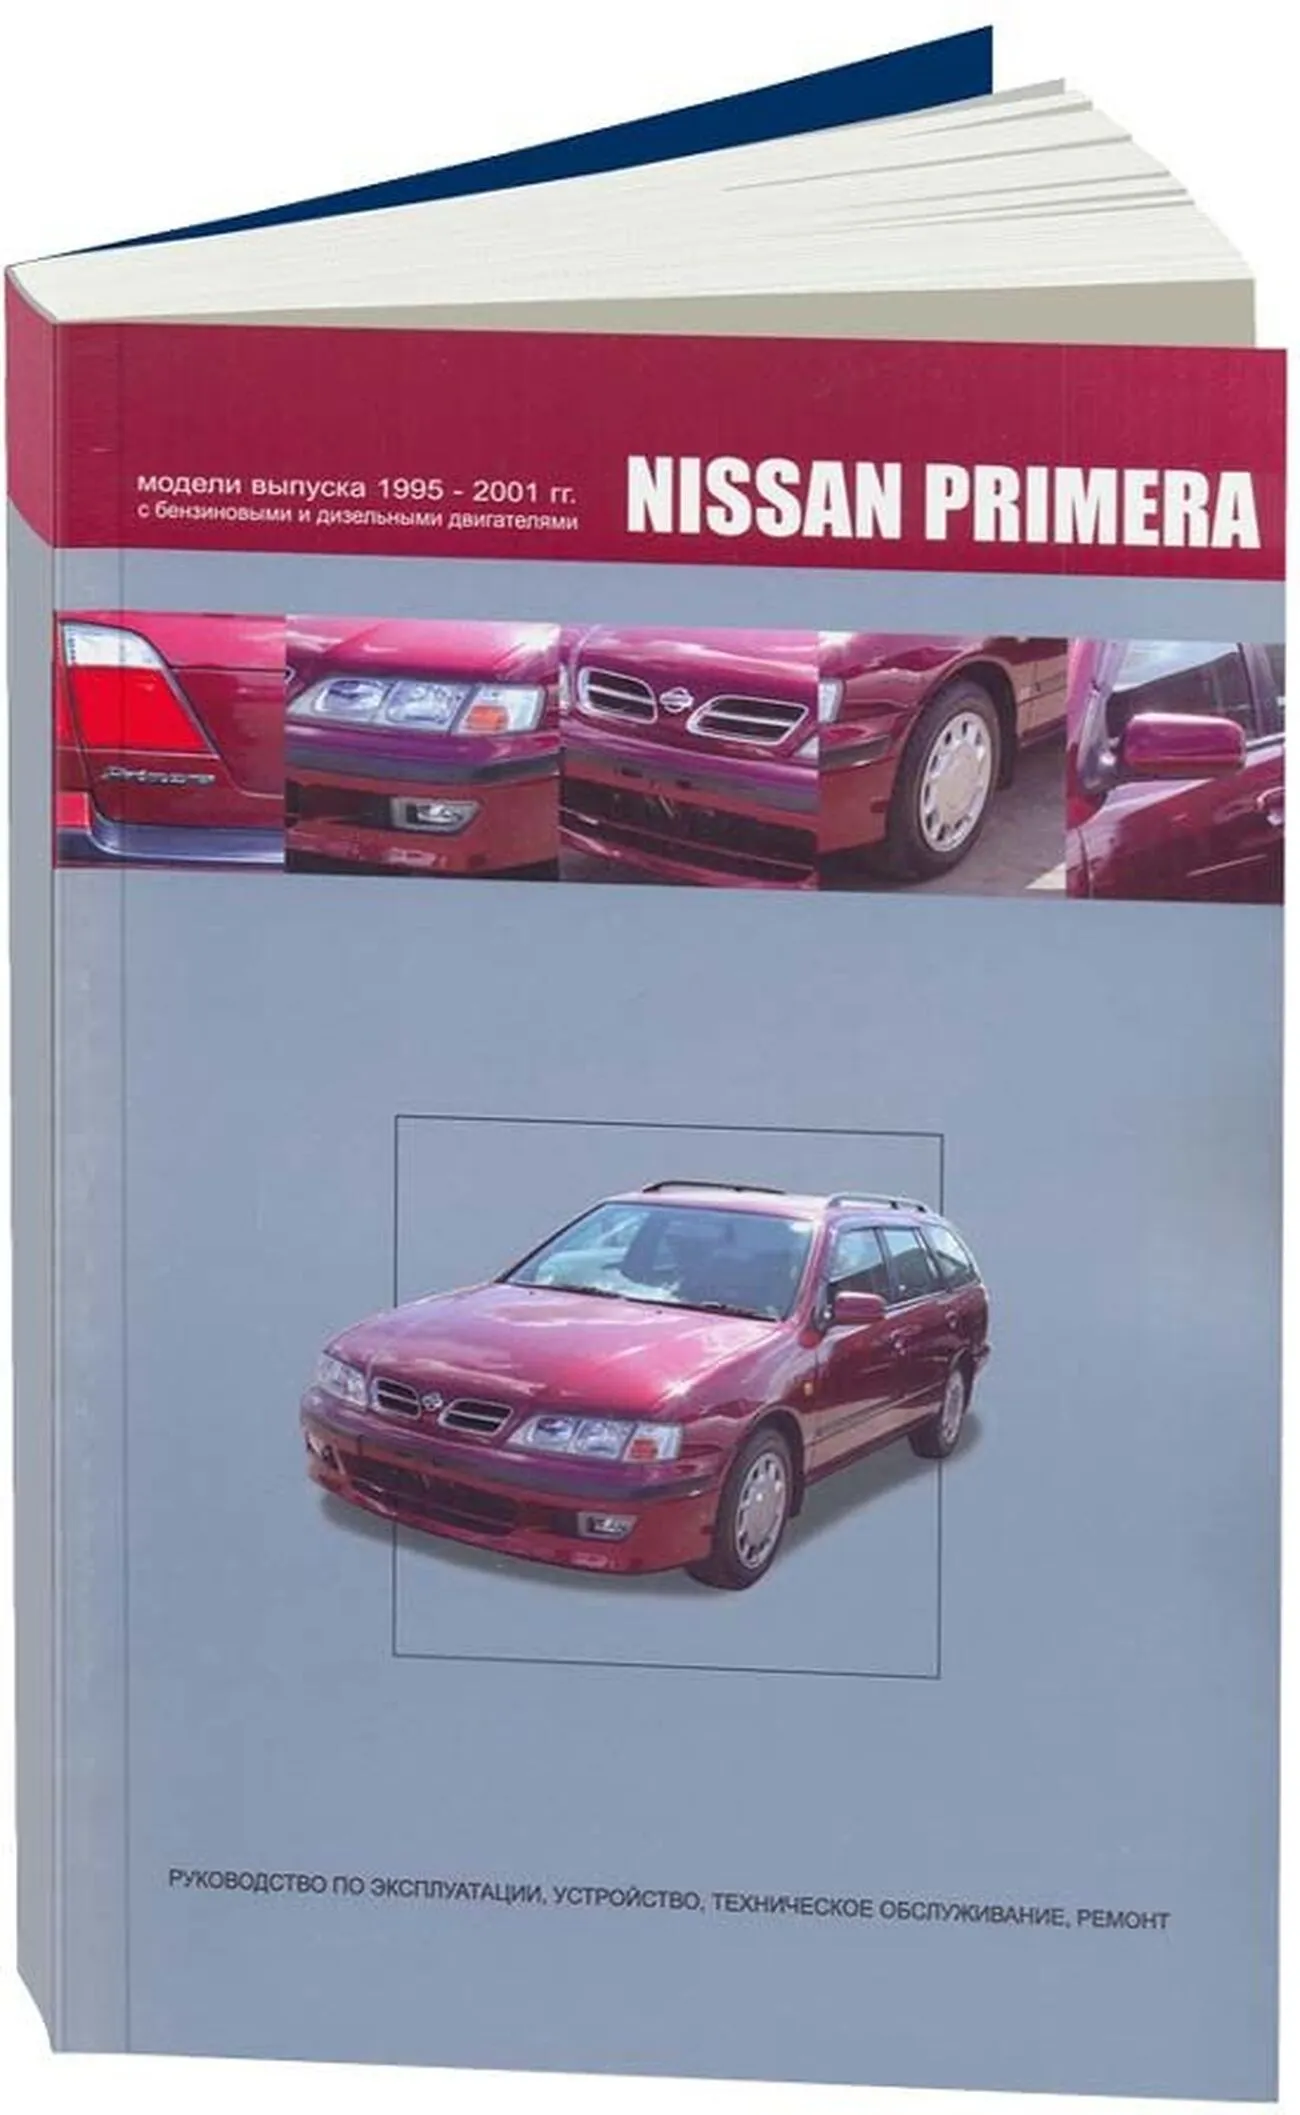 Книга: NISSAN PRIMERA (б , д) 1995-2001 г.в., рем., экспл., то | Автонавигатор